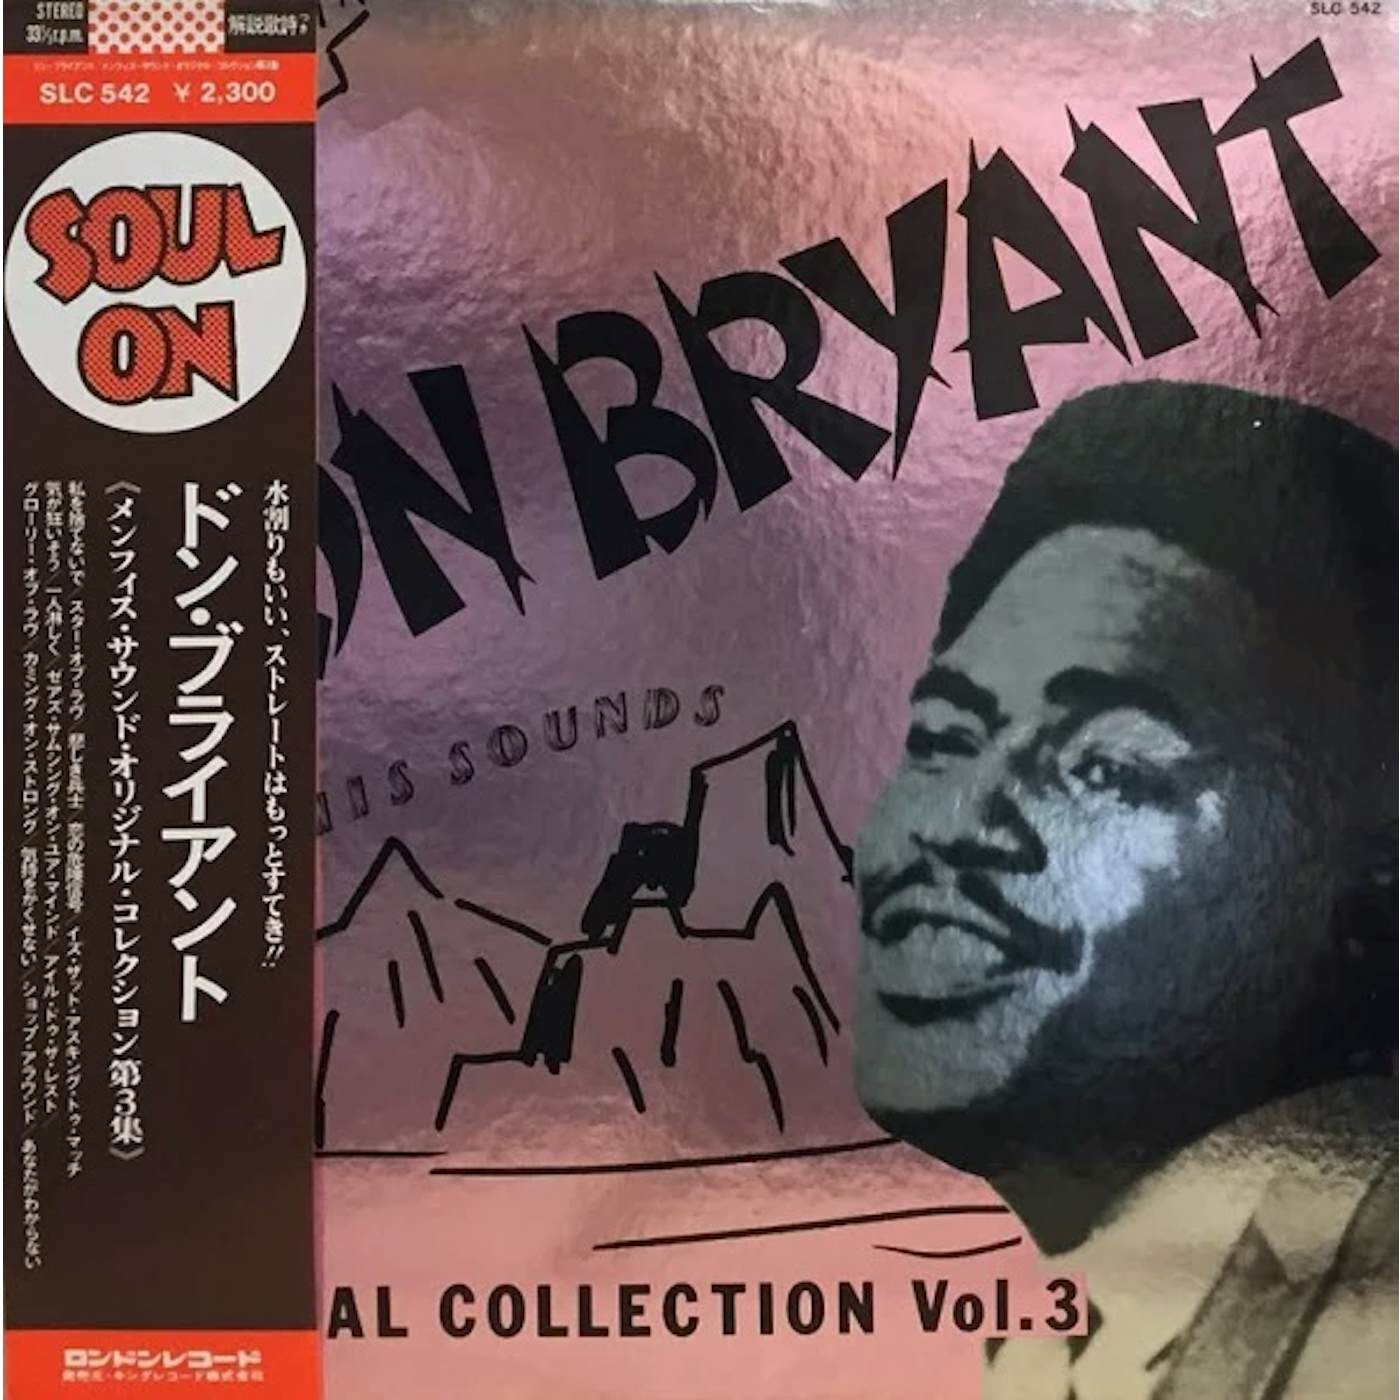 Don Bryant MEMPHIS SOUNDS ORIGINAL COLLECTION VOL 3 CD